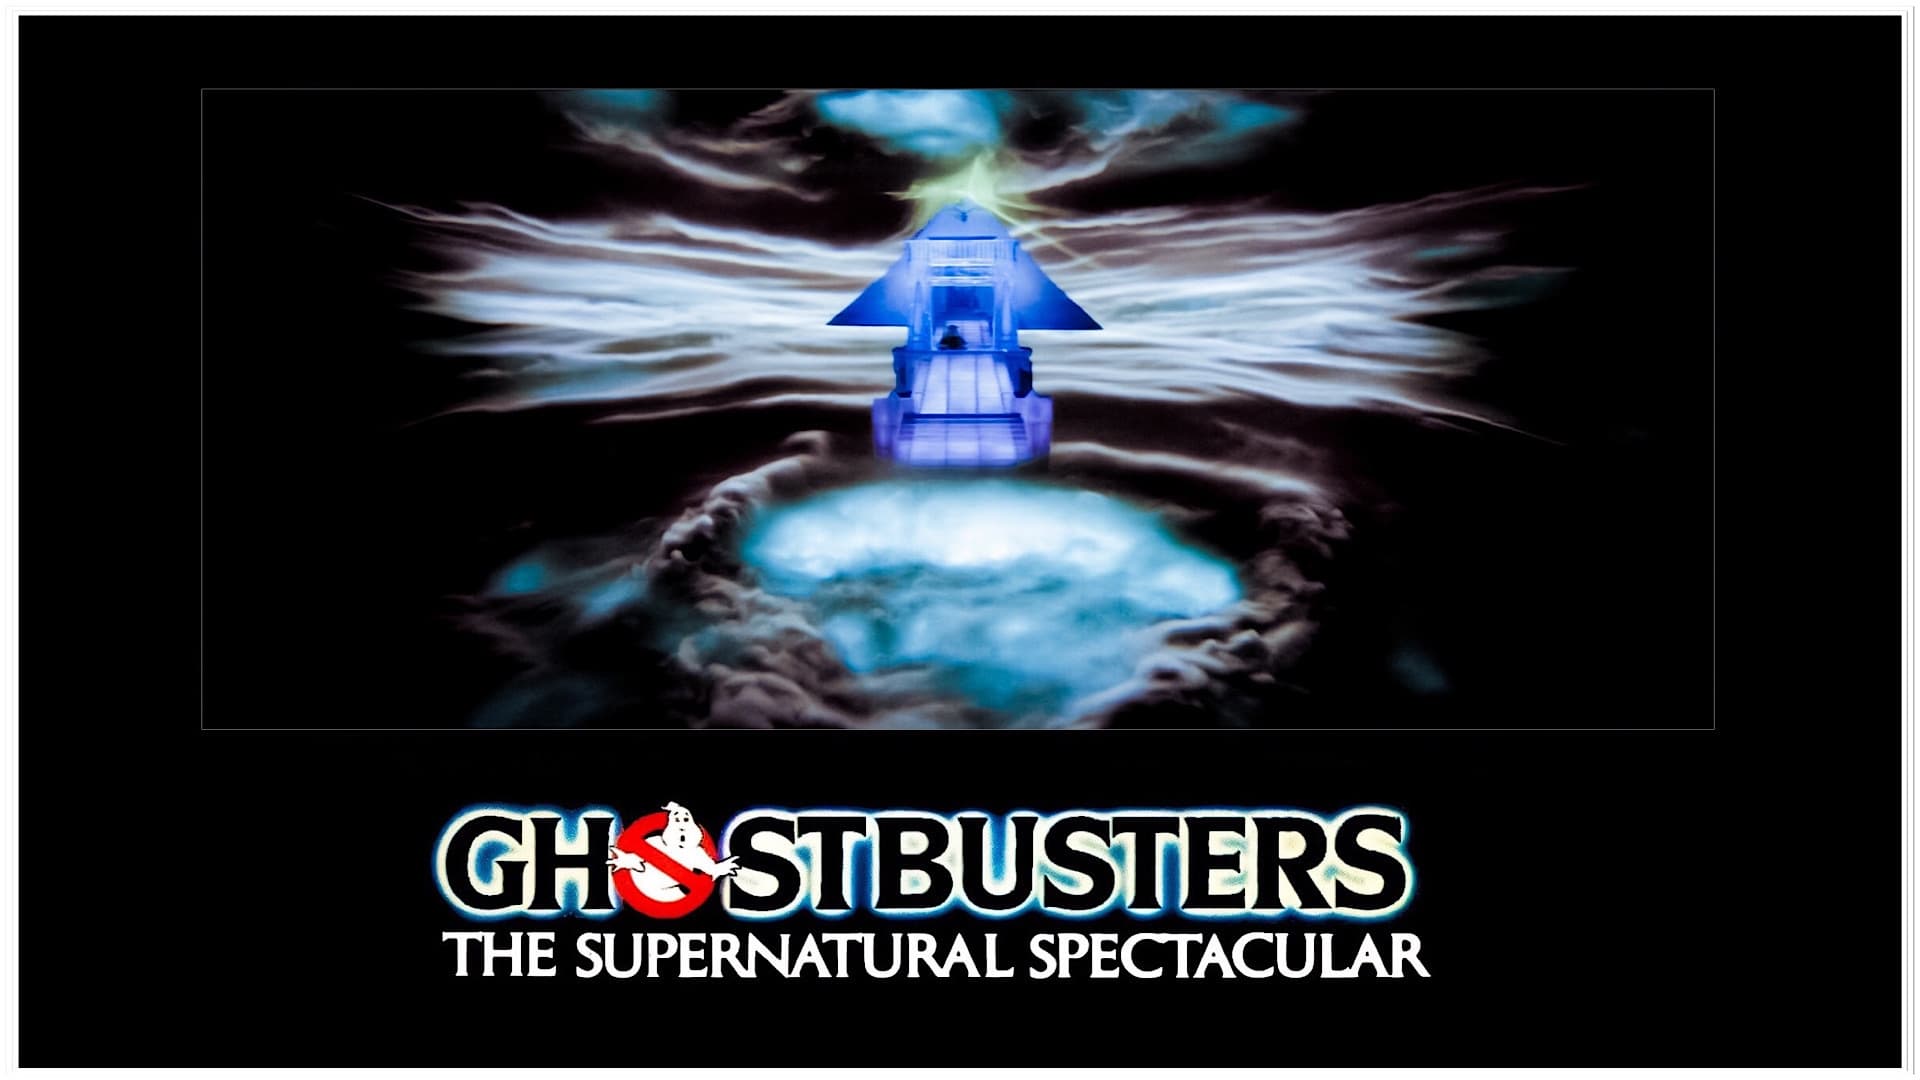 Ghostbusters - Die Geisterjäger (1984)